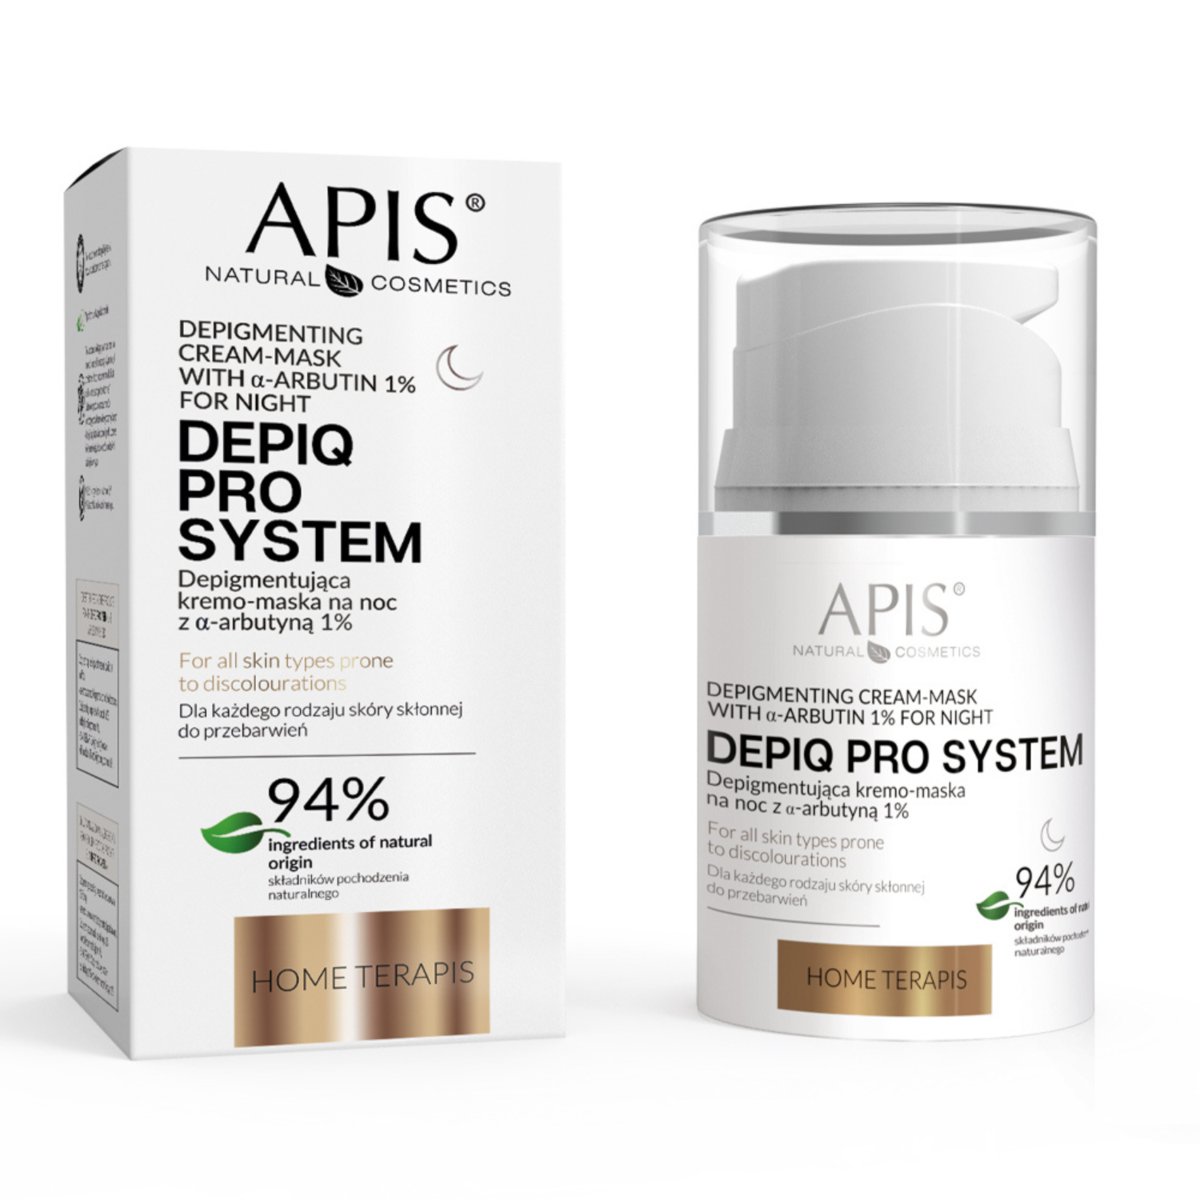 Apis, Depiq Pro System, Depigmentująca Krem-Maska Na Noc Na Przebarwienia, 50ml